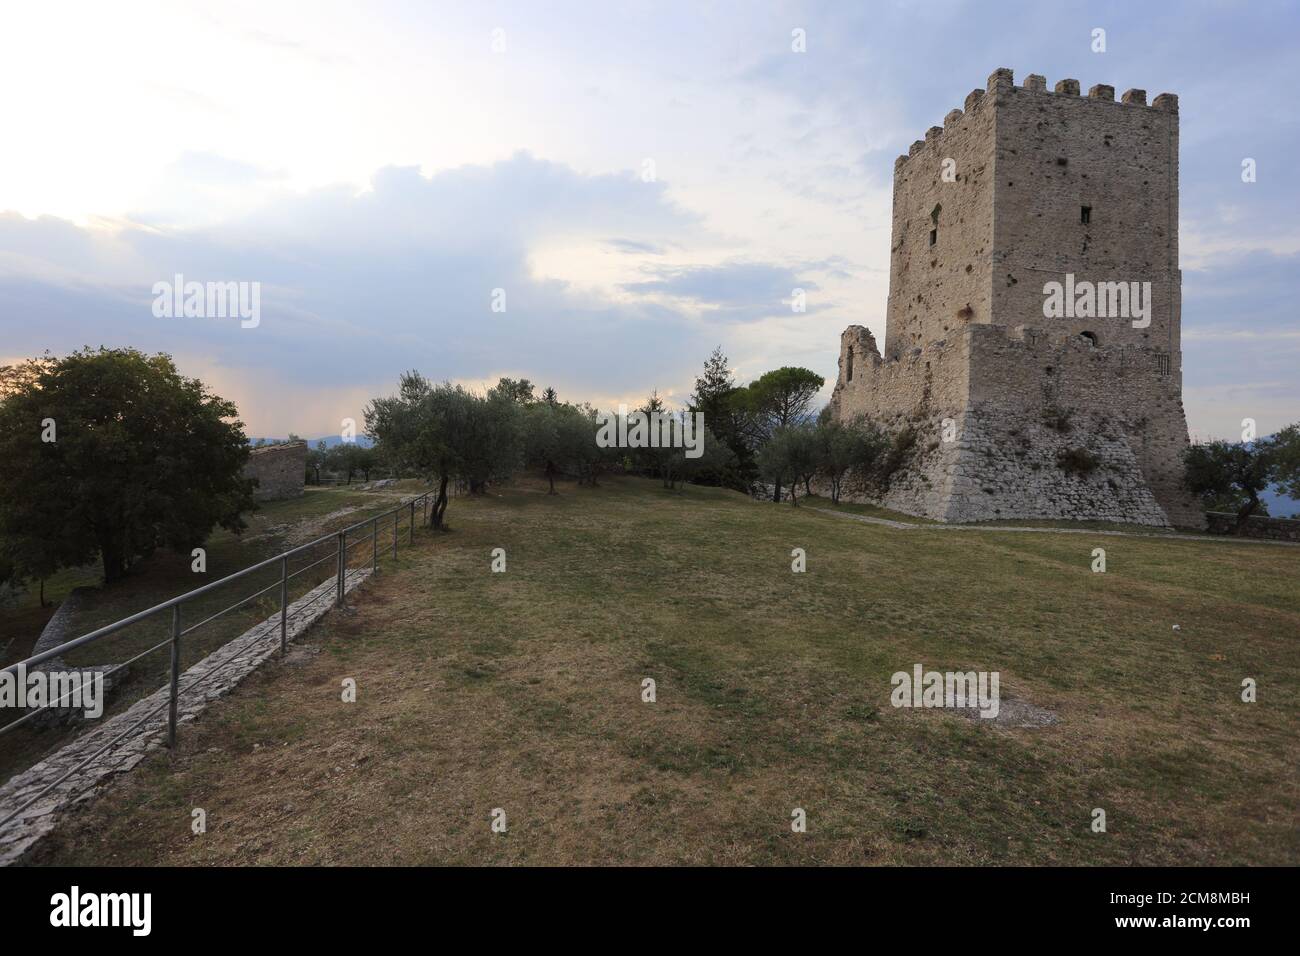 Arpino, Italia - 16 settembre 2020: L'acropoli dell'antica Foto Stock